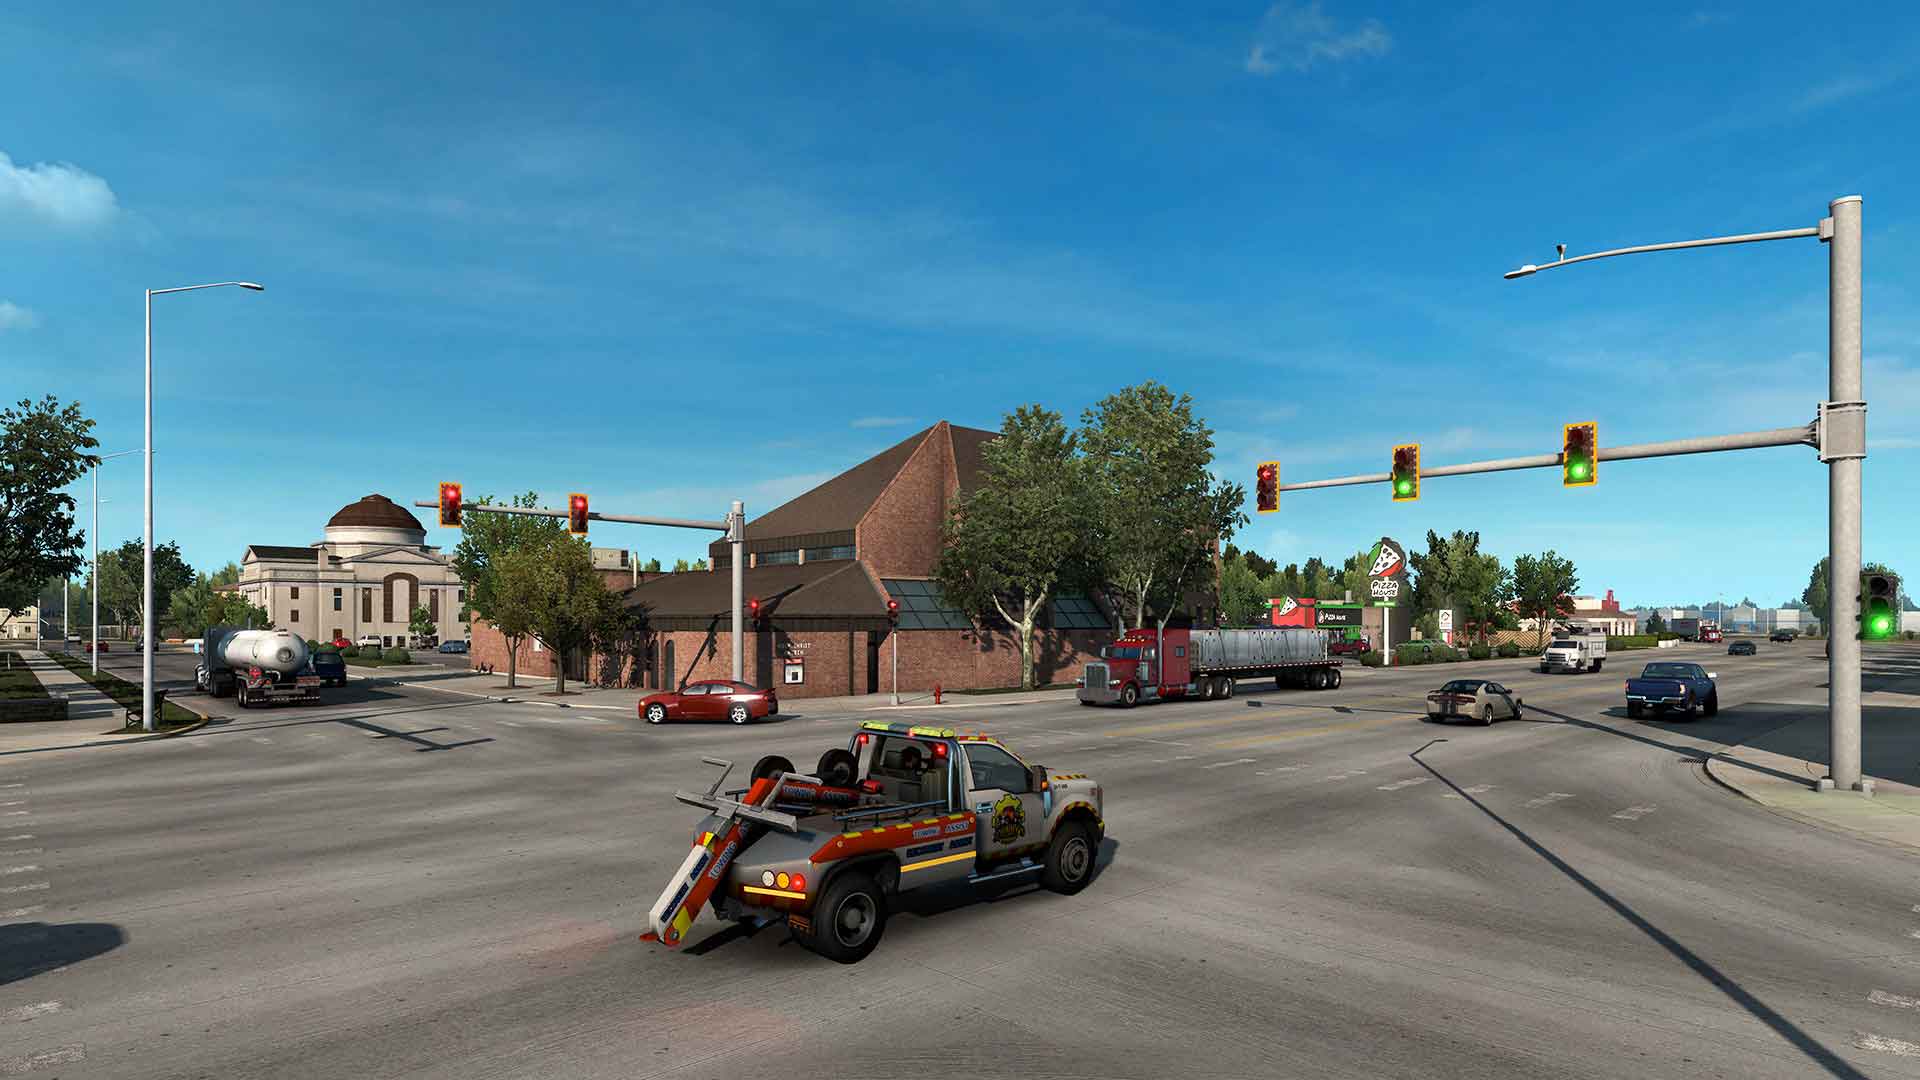 american truck simulator download full